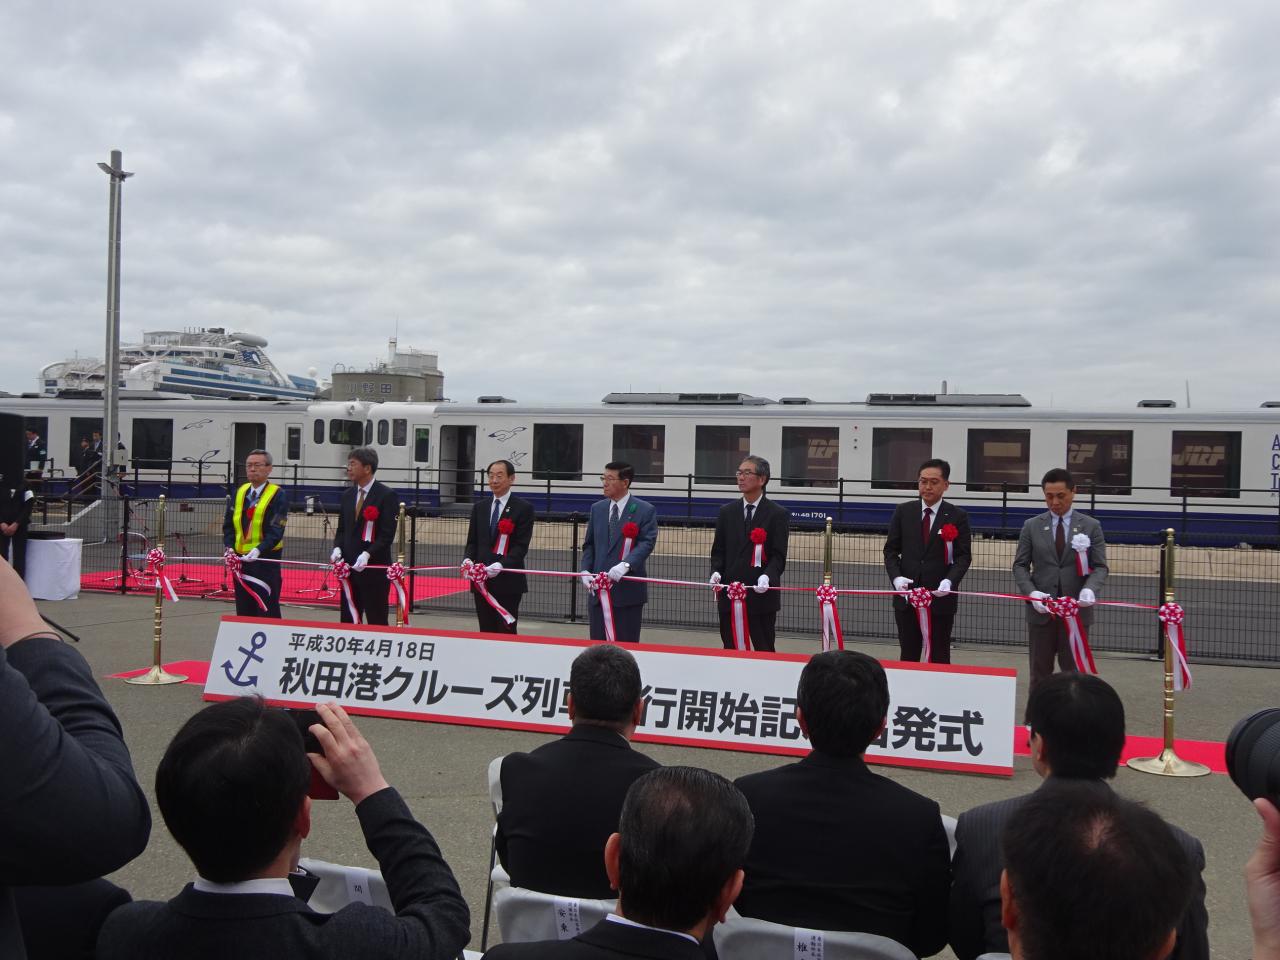 秋田港クルーズターミナル供用開始記念式典及び秋田港クルーズ列車出発式典の様子